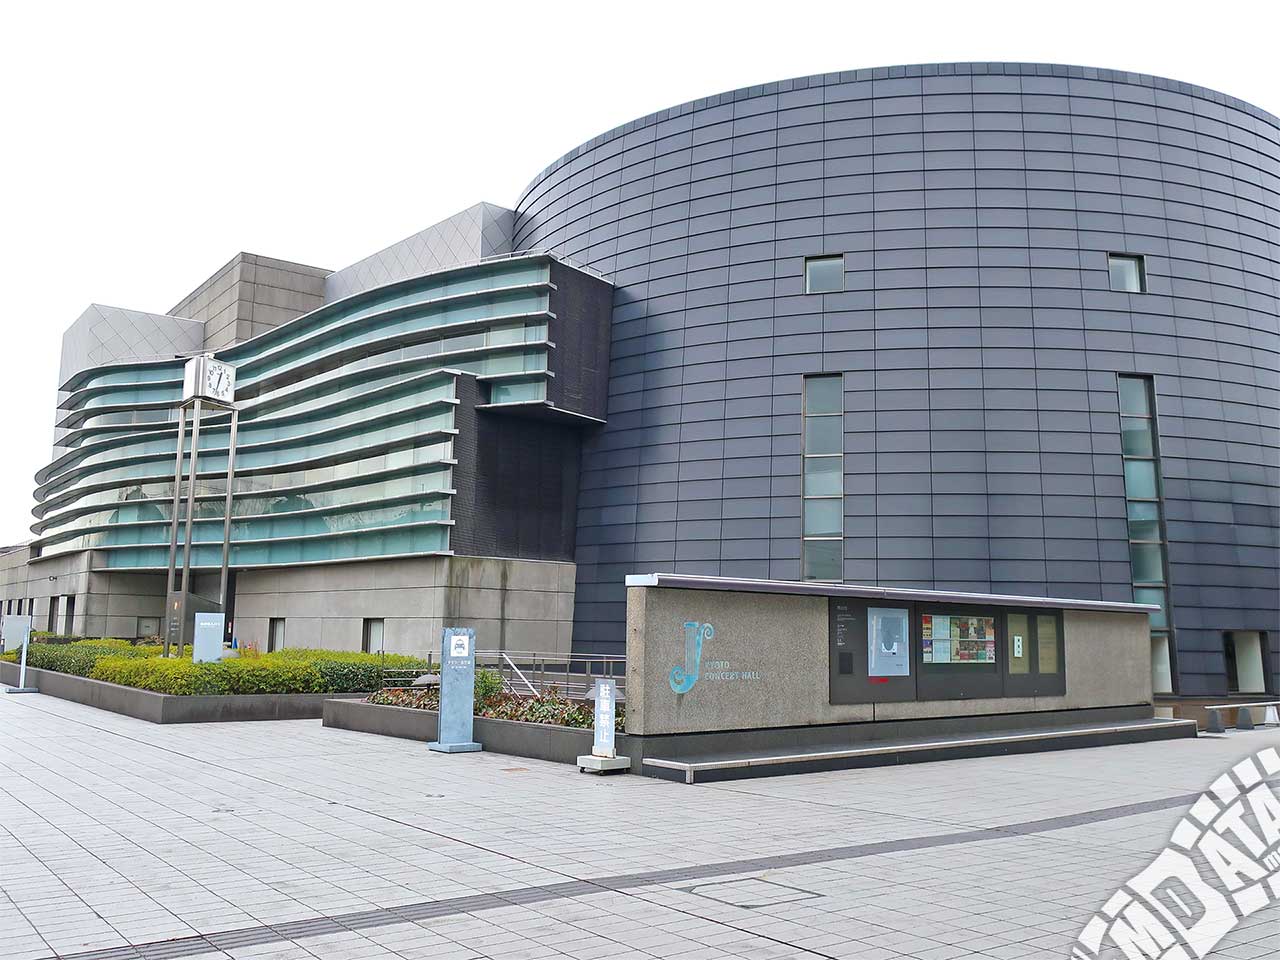 京都コンサートホールの写真 撮影日:2019/1/18 Photo taken on 2019/01/18